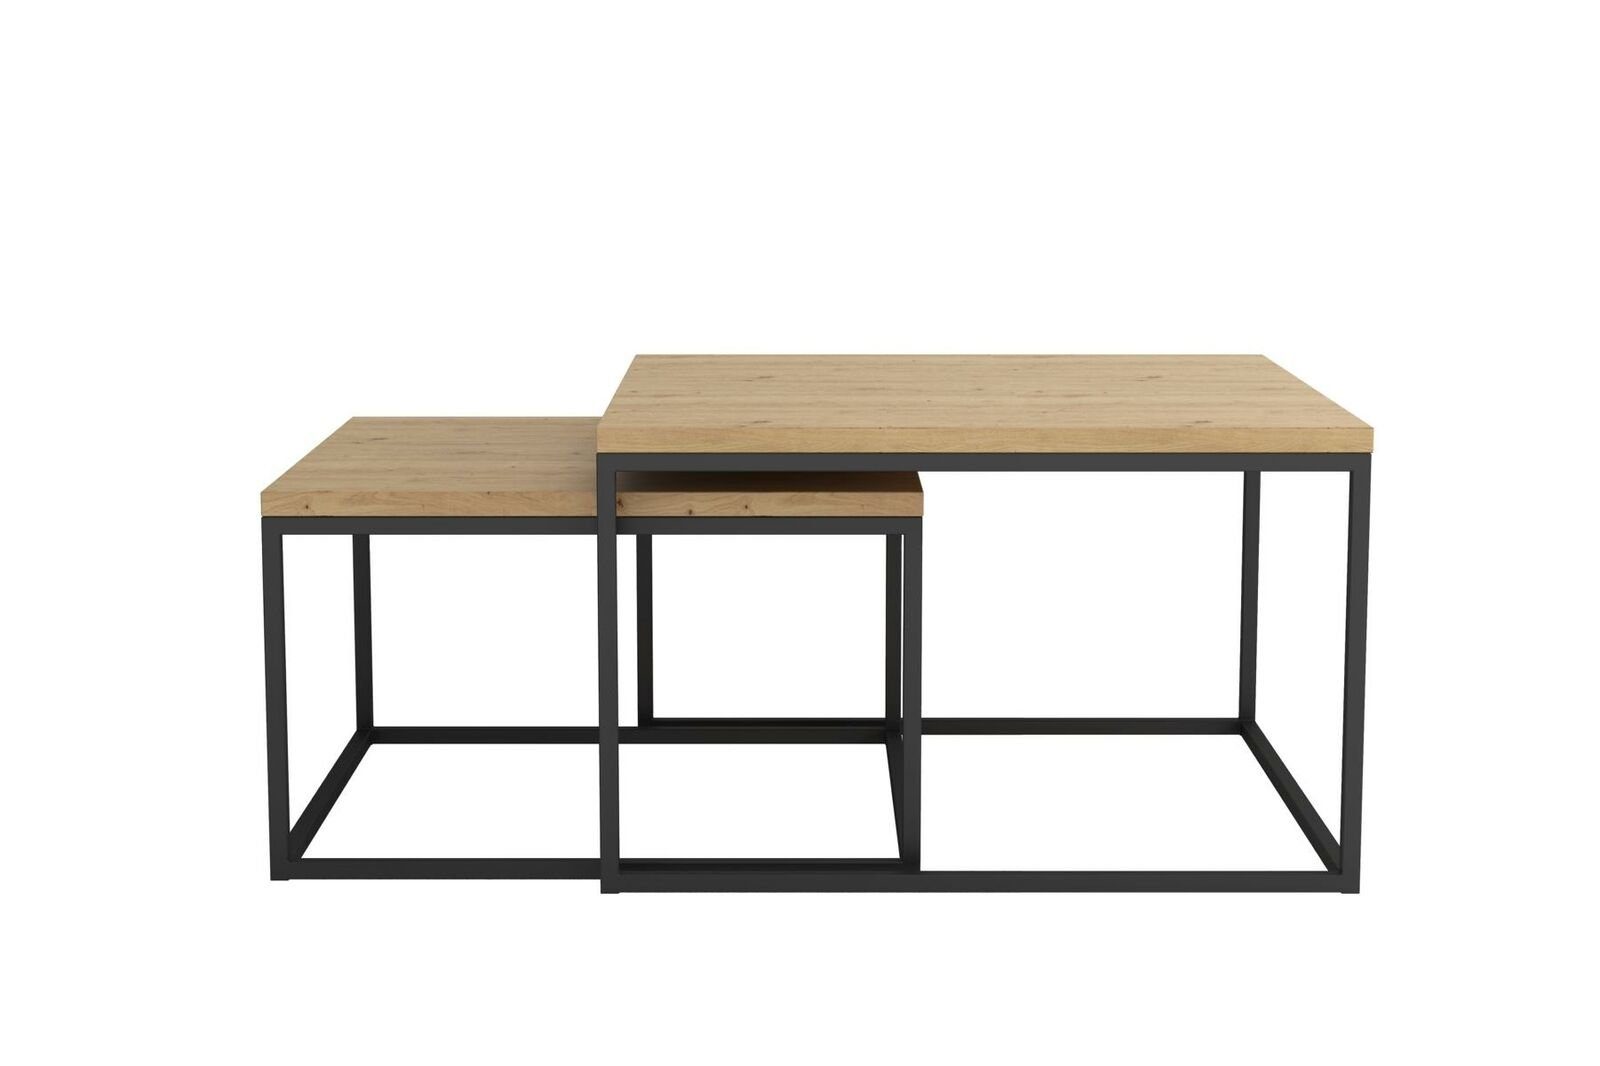 Beistelltisch Design Tische Set Couchtisch 2x 2x Doppel Doppel Kaffeetisch Kaffeetisch Tische Set JVmoebel Couchtisch, Beistelltisch Design Couchtisch